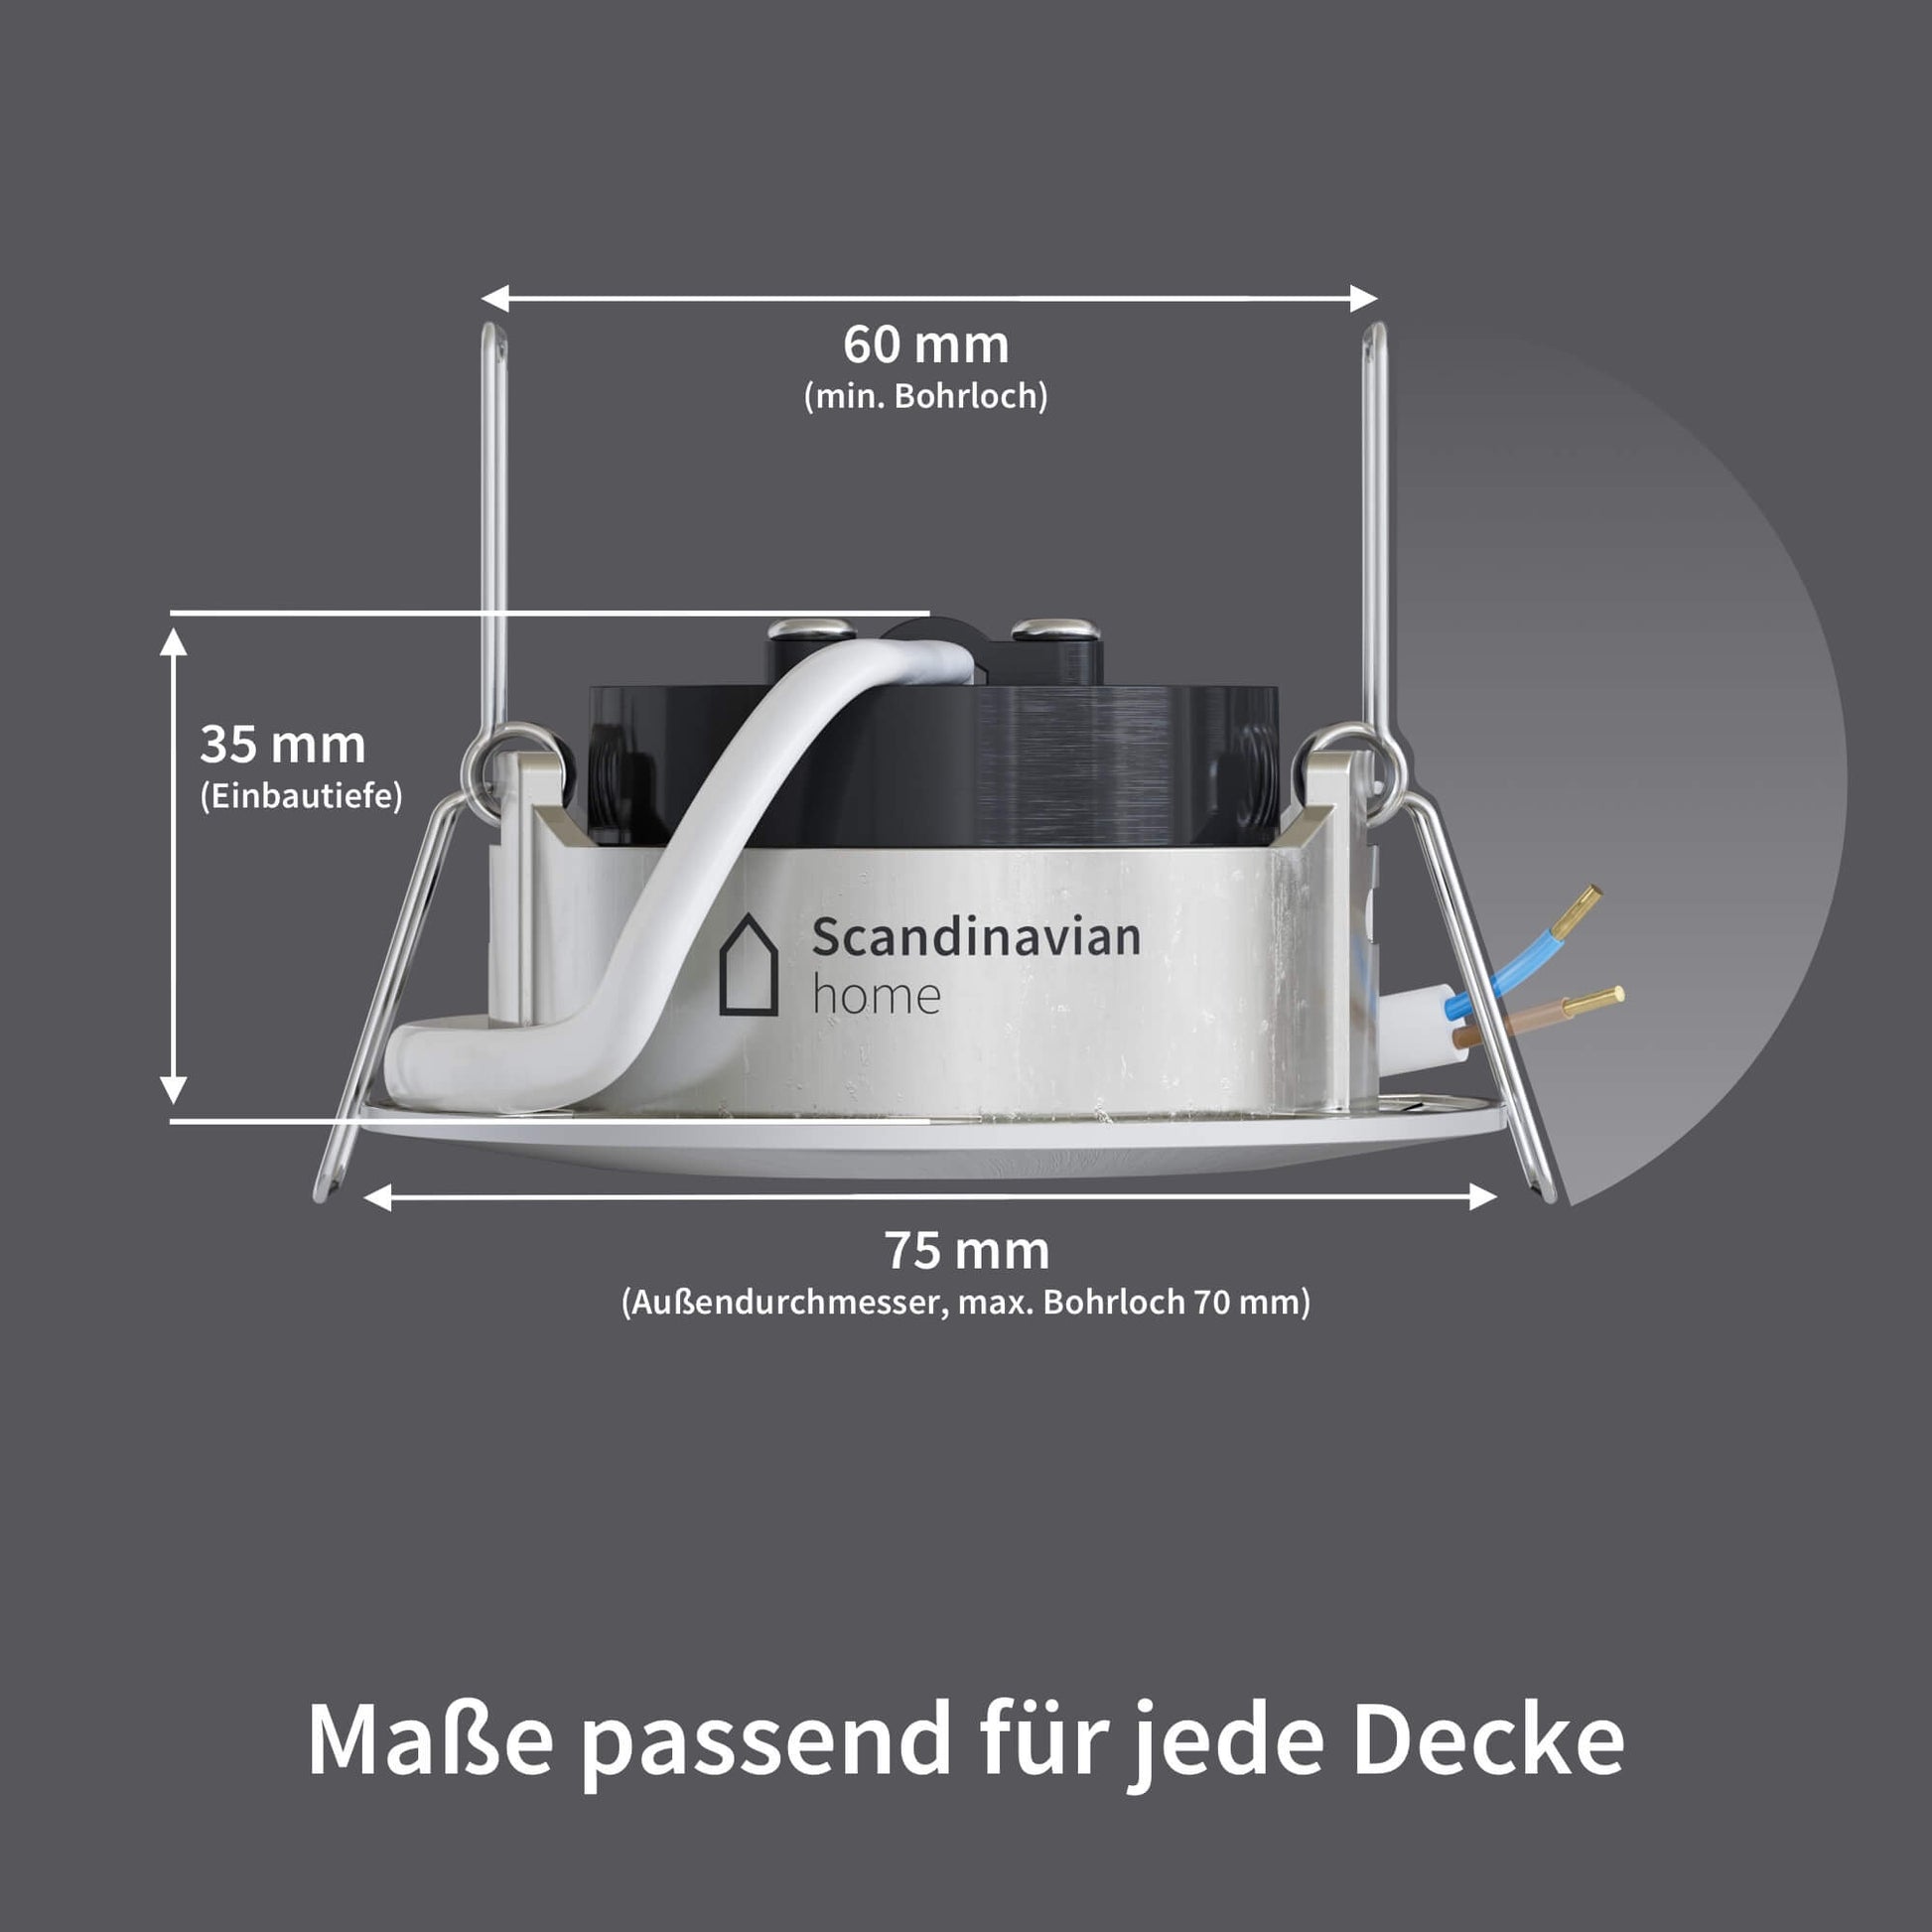 Scandinavian home DN-Serie Dimmbar Einbaustrahler (WarmDim) LED – Edelstahldesign I